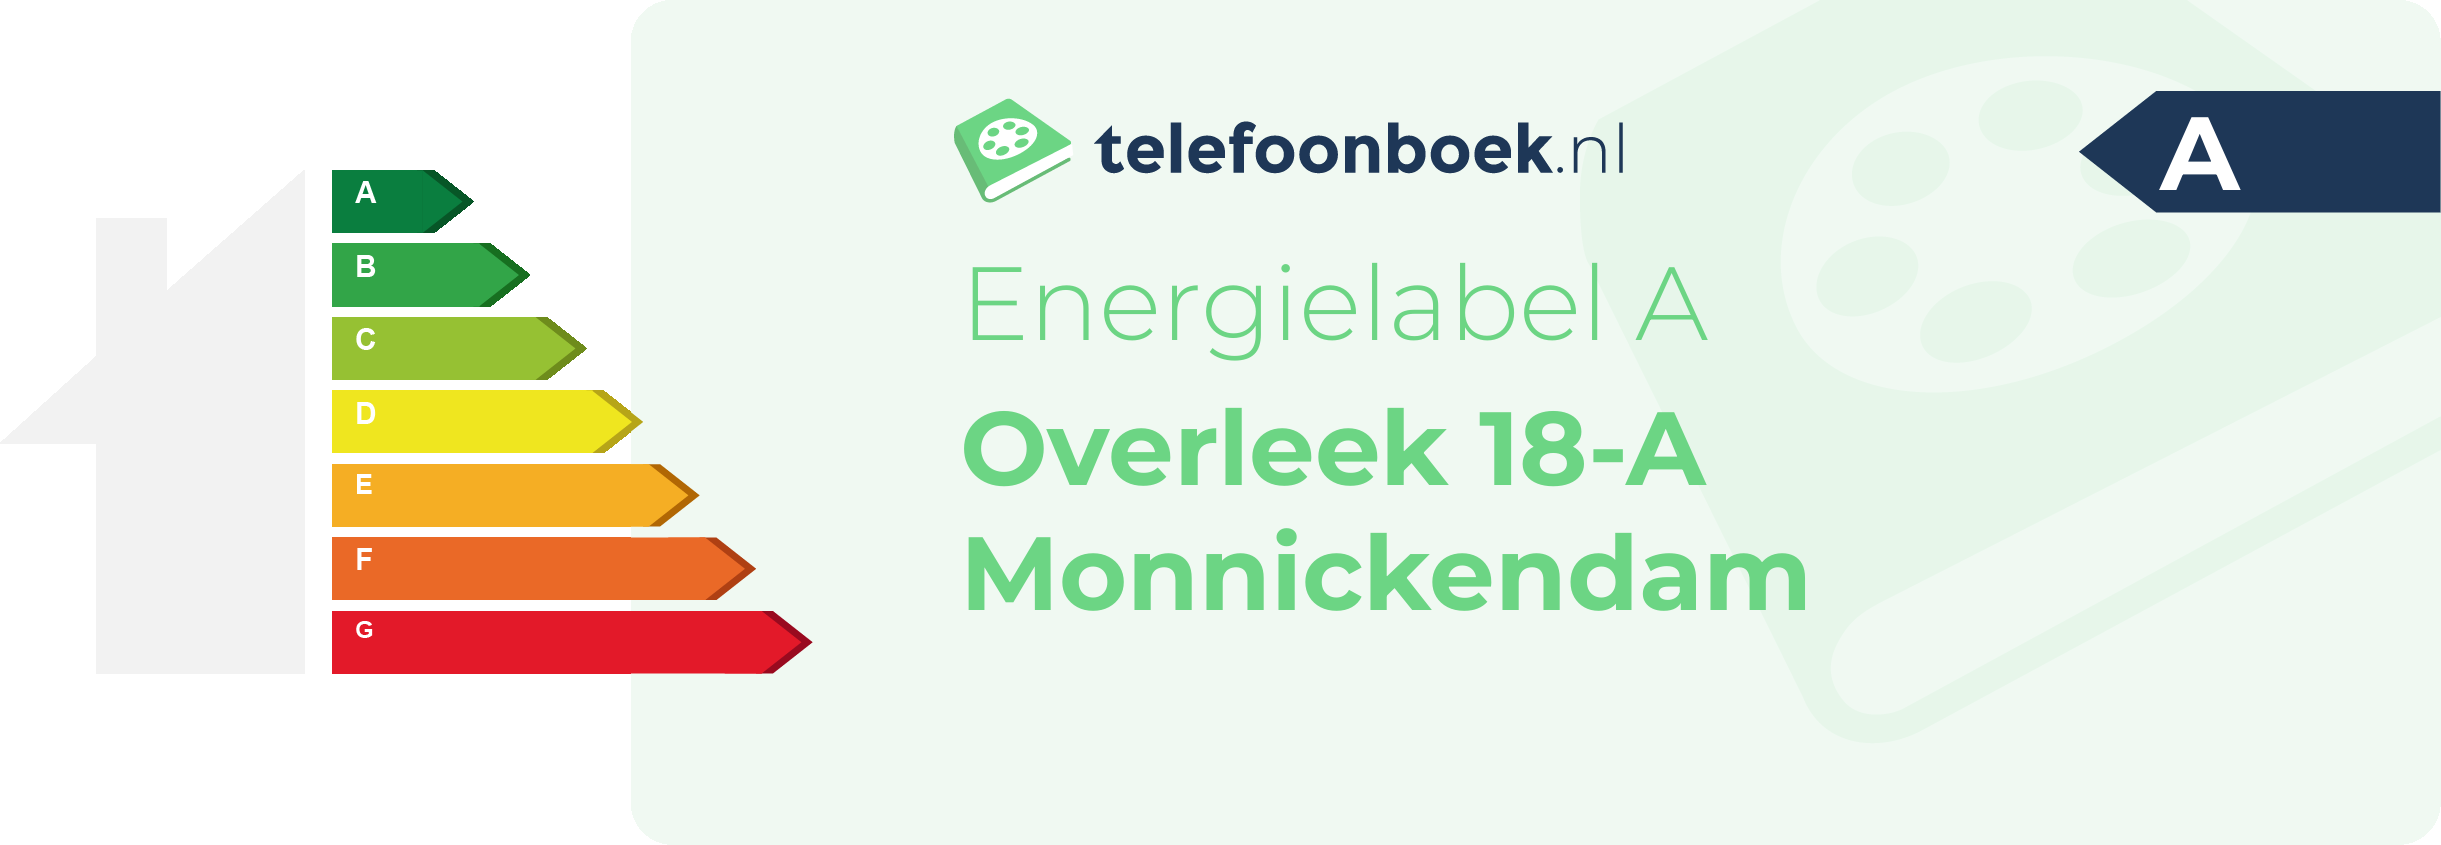 Energielabel Overleek 18-A Monnickendam